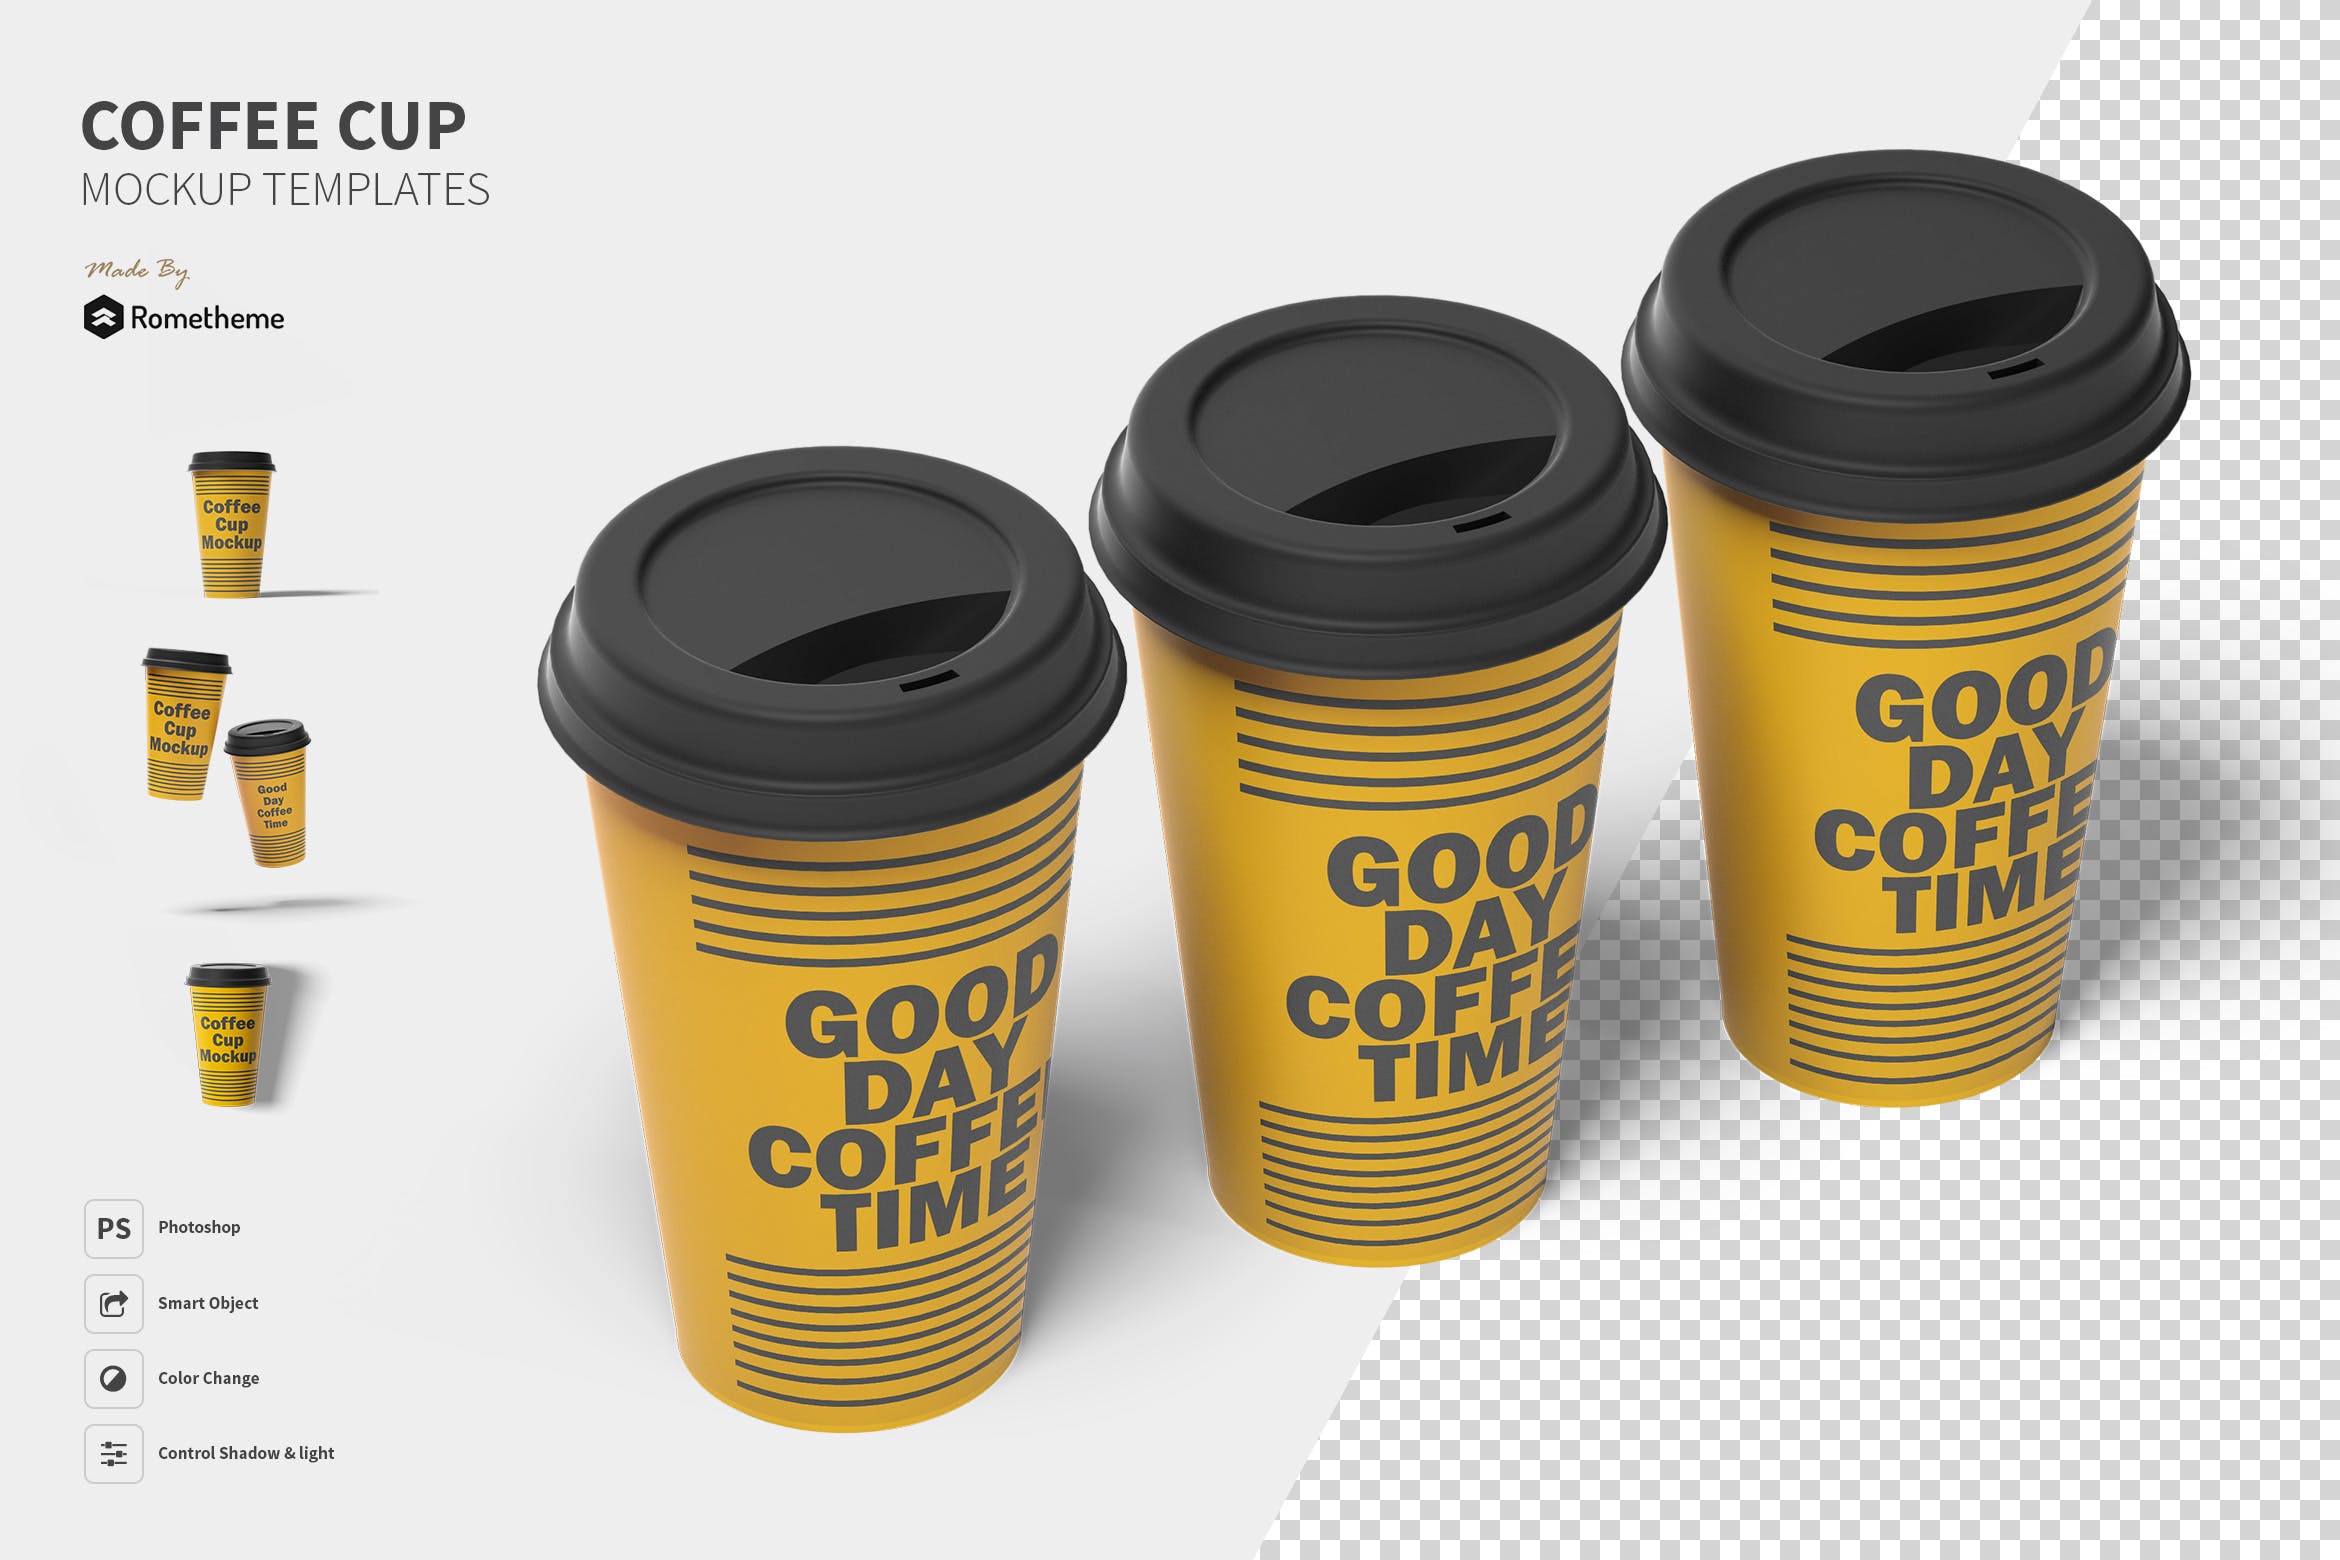 一次性咖啡纸杯设计图第一素材精选 Coffee Cup Mockup Set FH插图